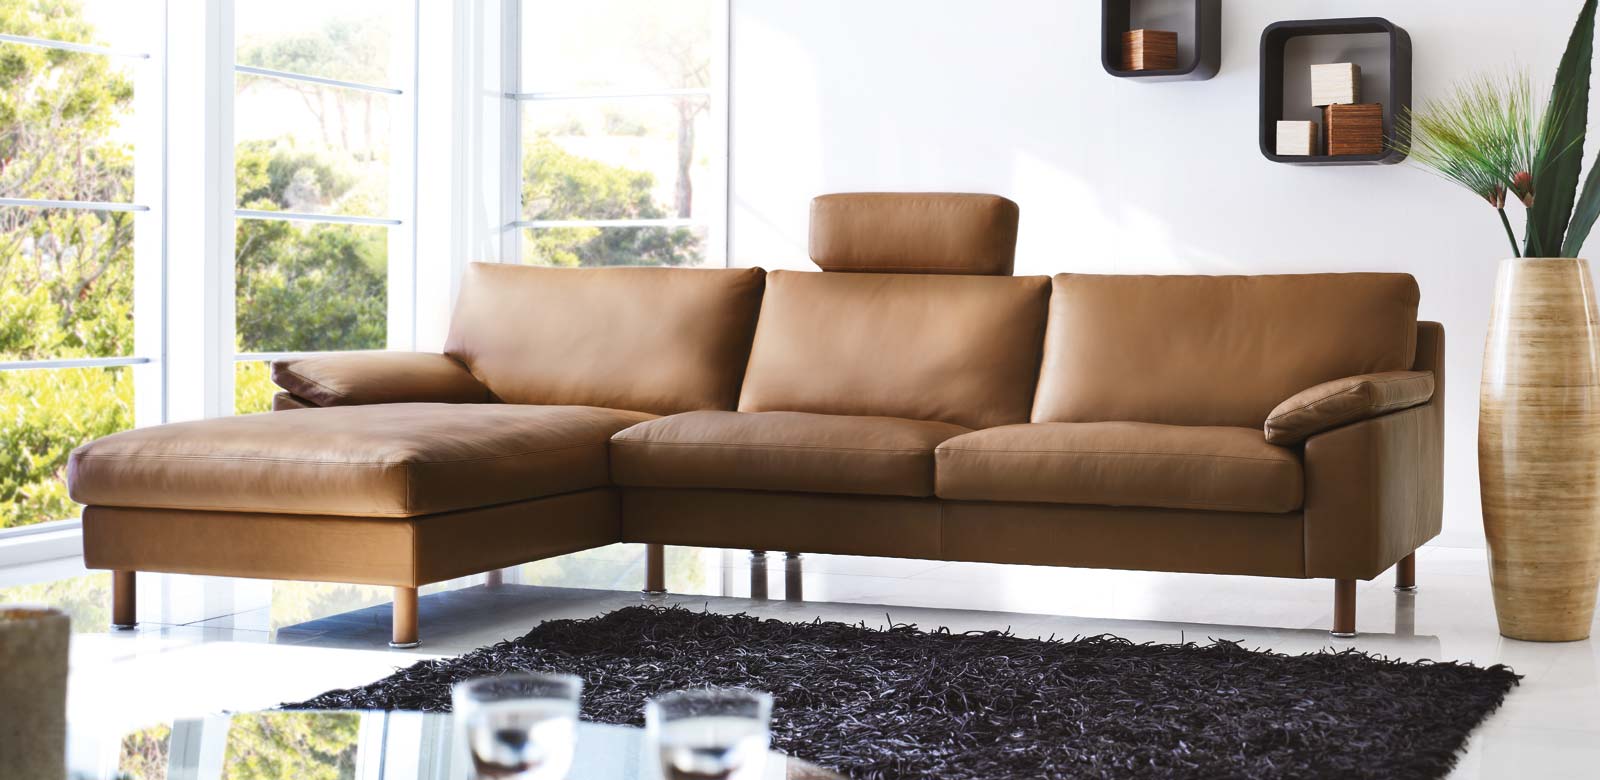 CL650 Longchair-Sofa aus braunem Leder mit Kopfstütze mittig